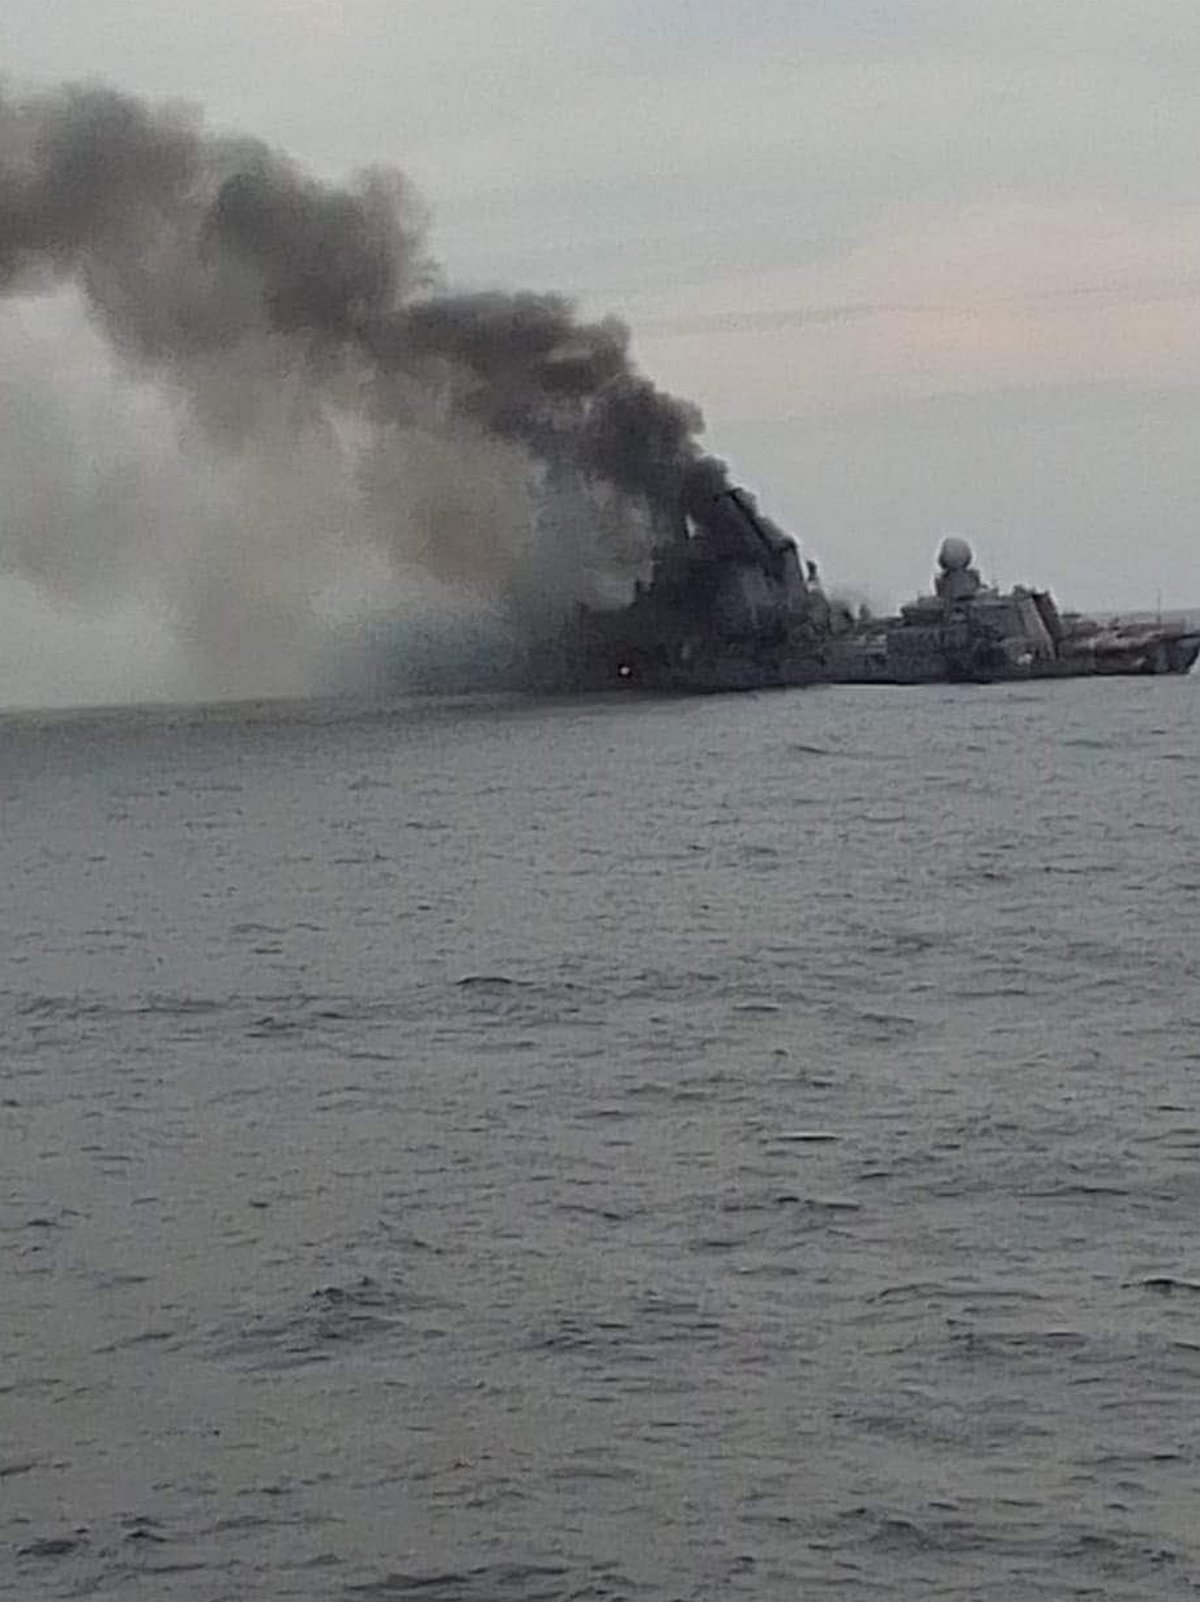 Voici les premières images du navire de guerre russe Moskva en train de couler